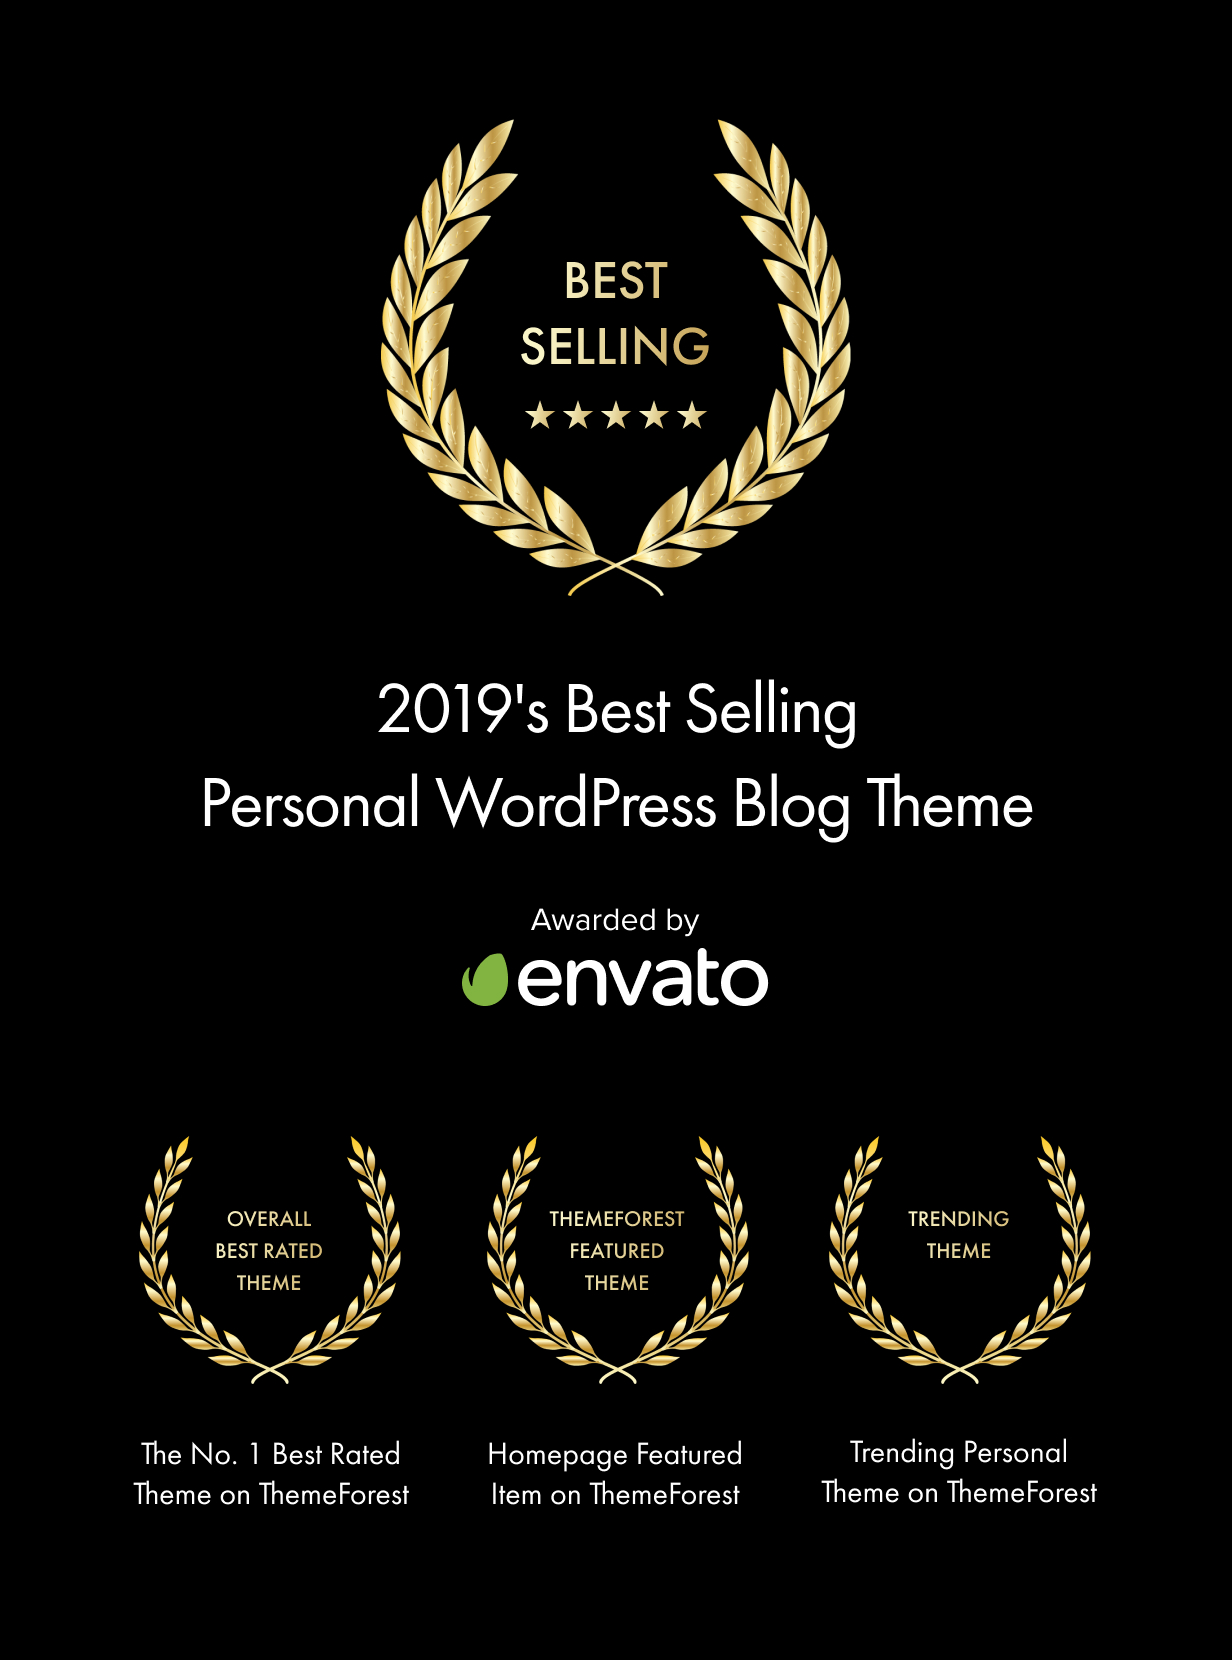 Tema de blog de WordPress personal más vendido de 2019